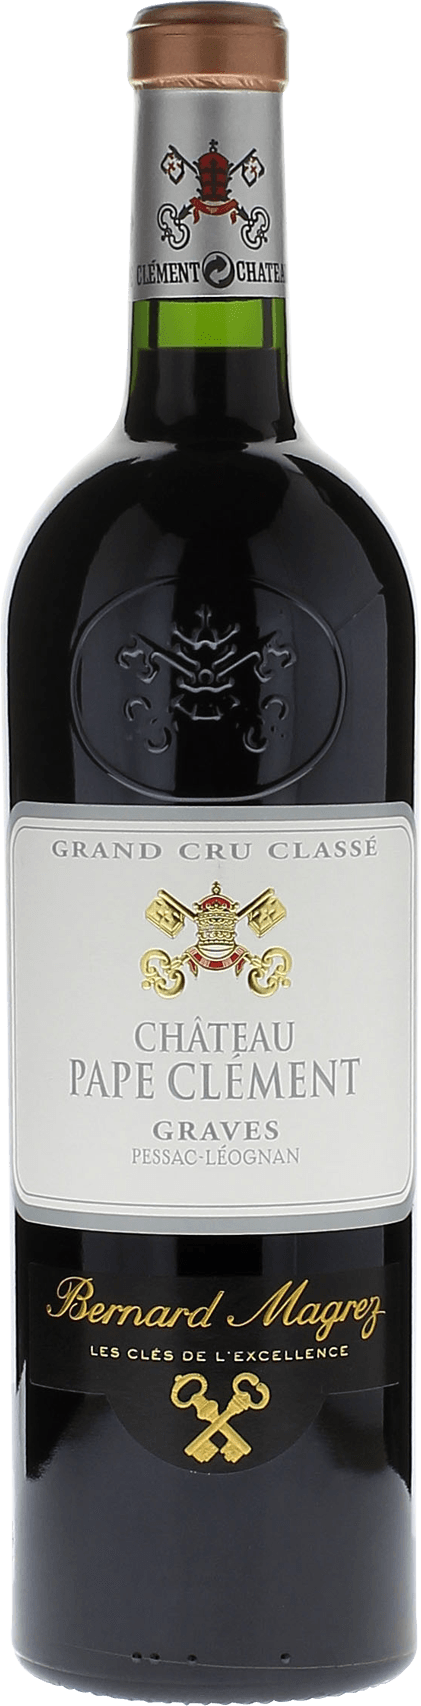 Pape clement rouge 2018 Grand Cru Class Pessac-Lognan, Bordeaux rouge